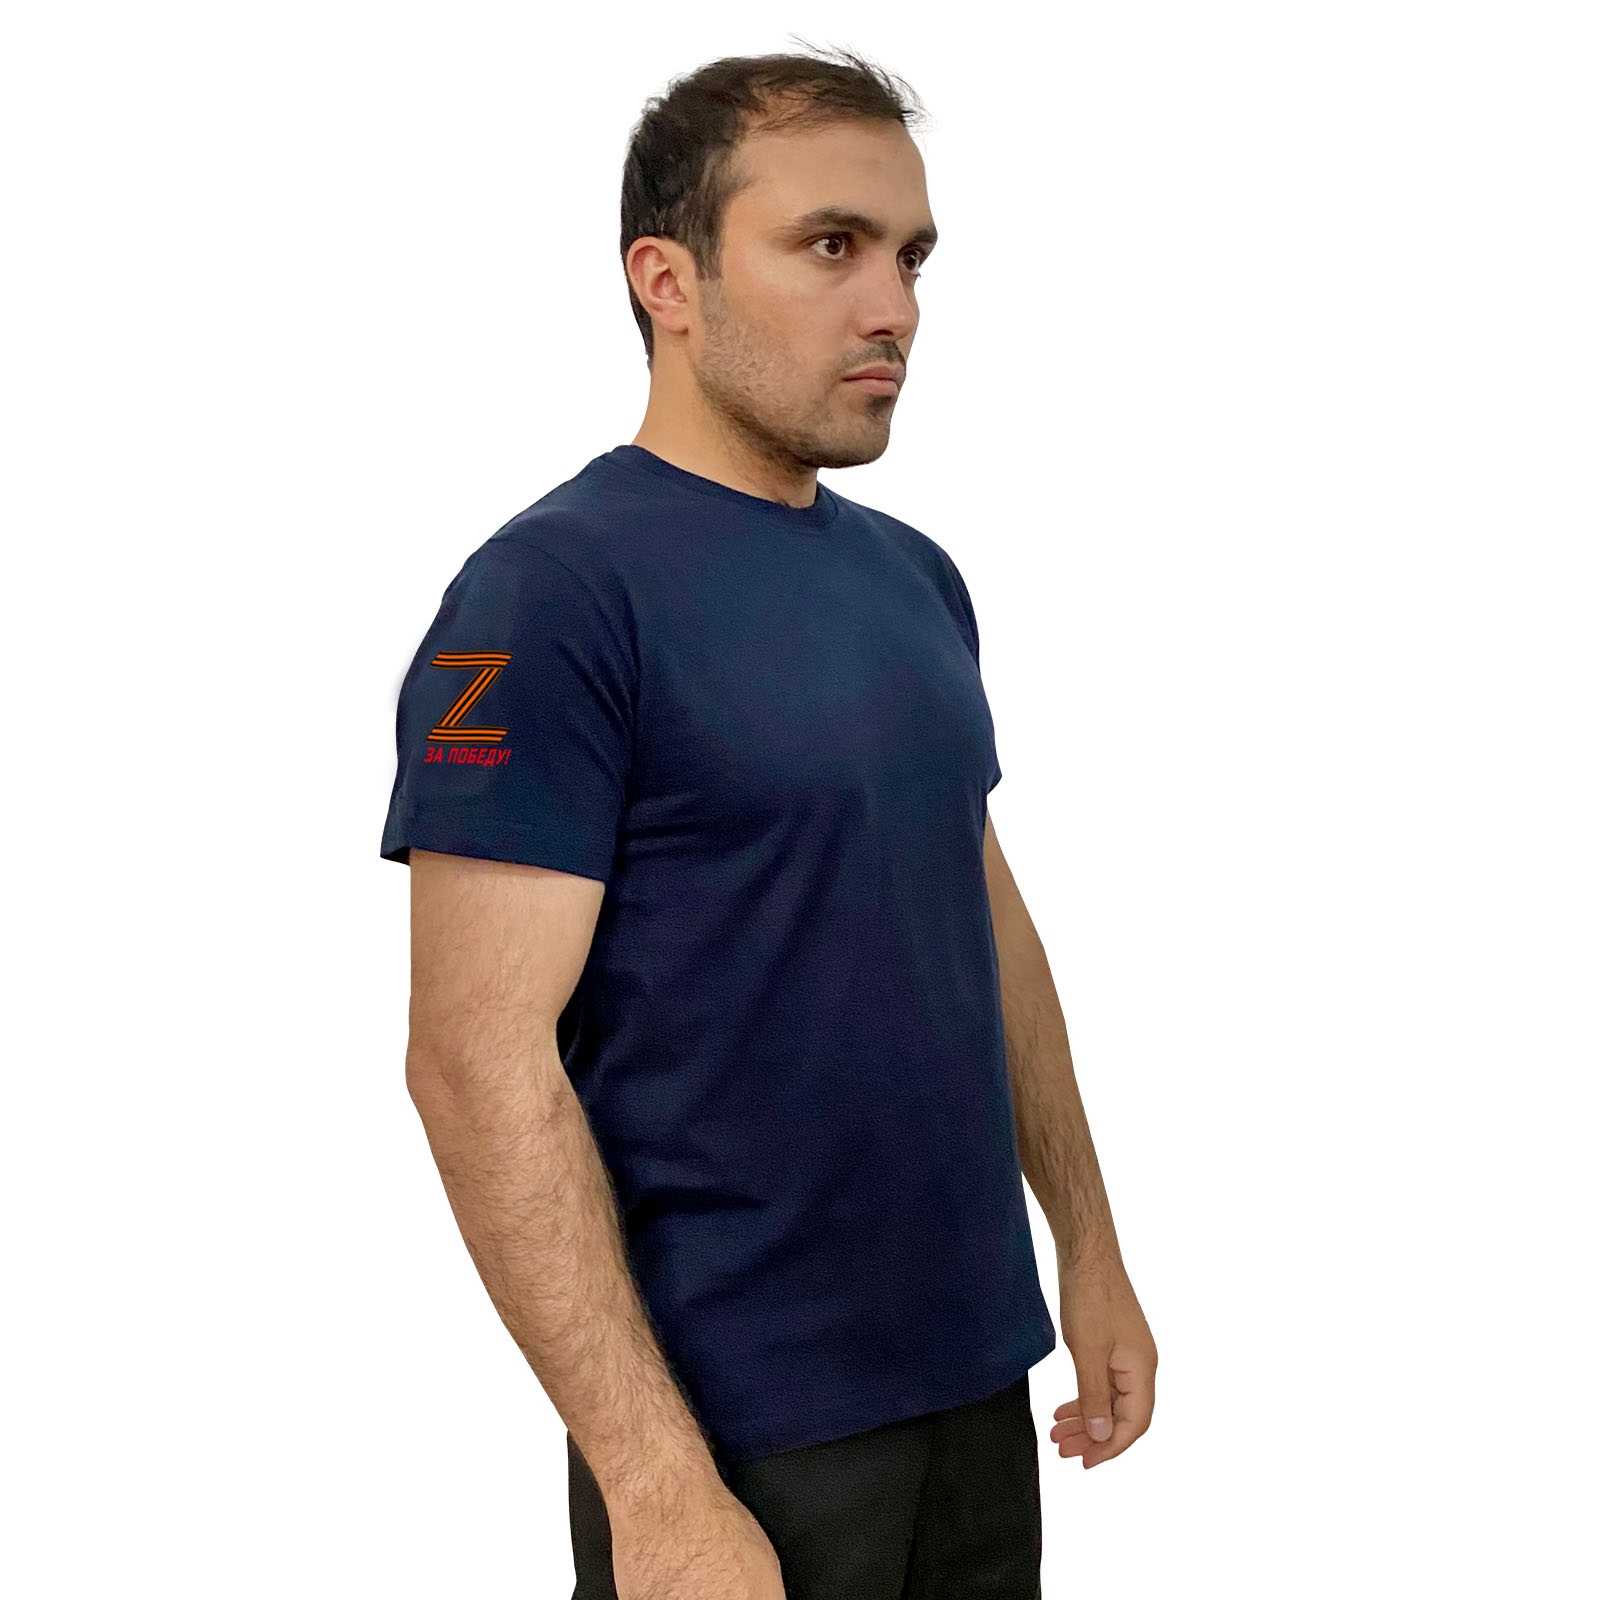 Тёмно-синяя футболка с термопереводкой на рукаве Z